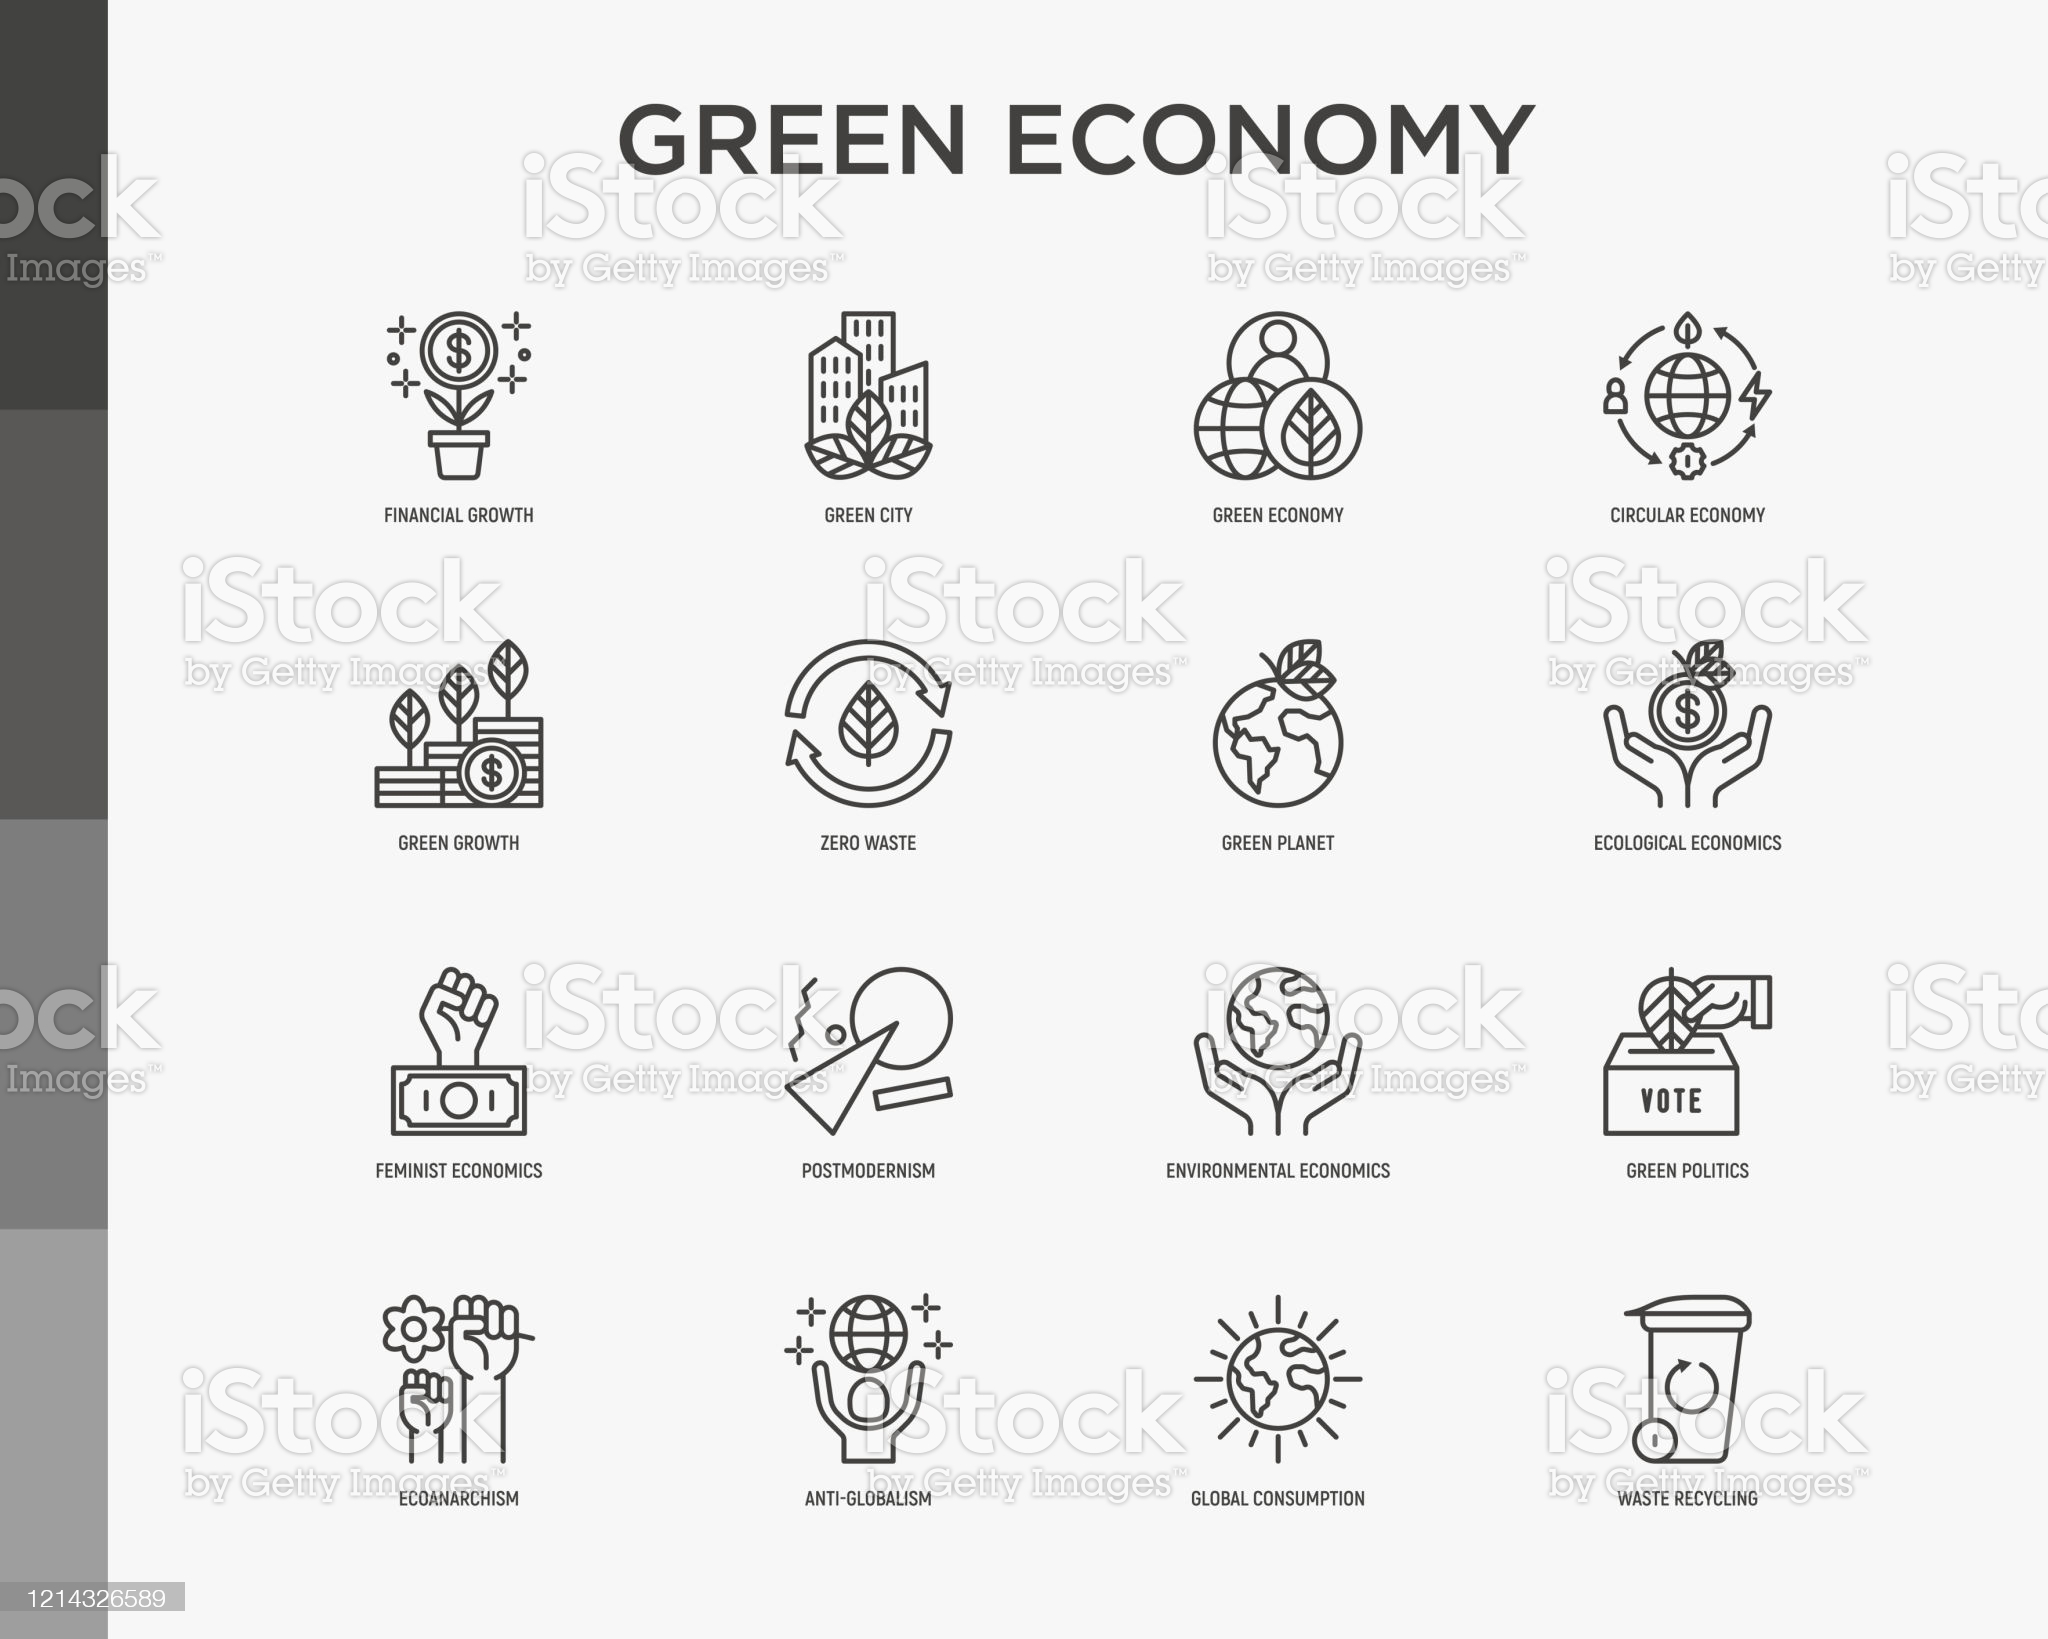 Green economy.